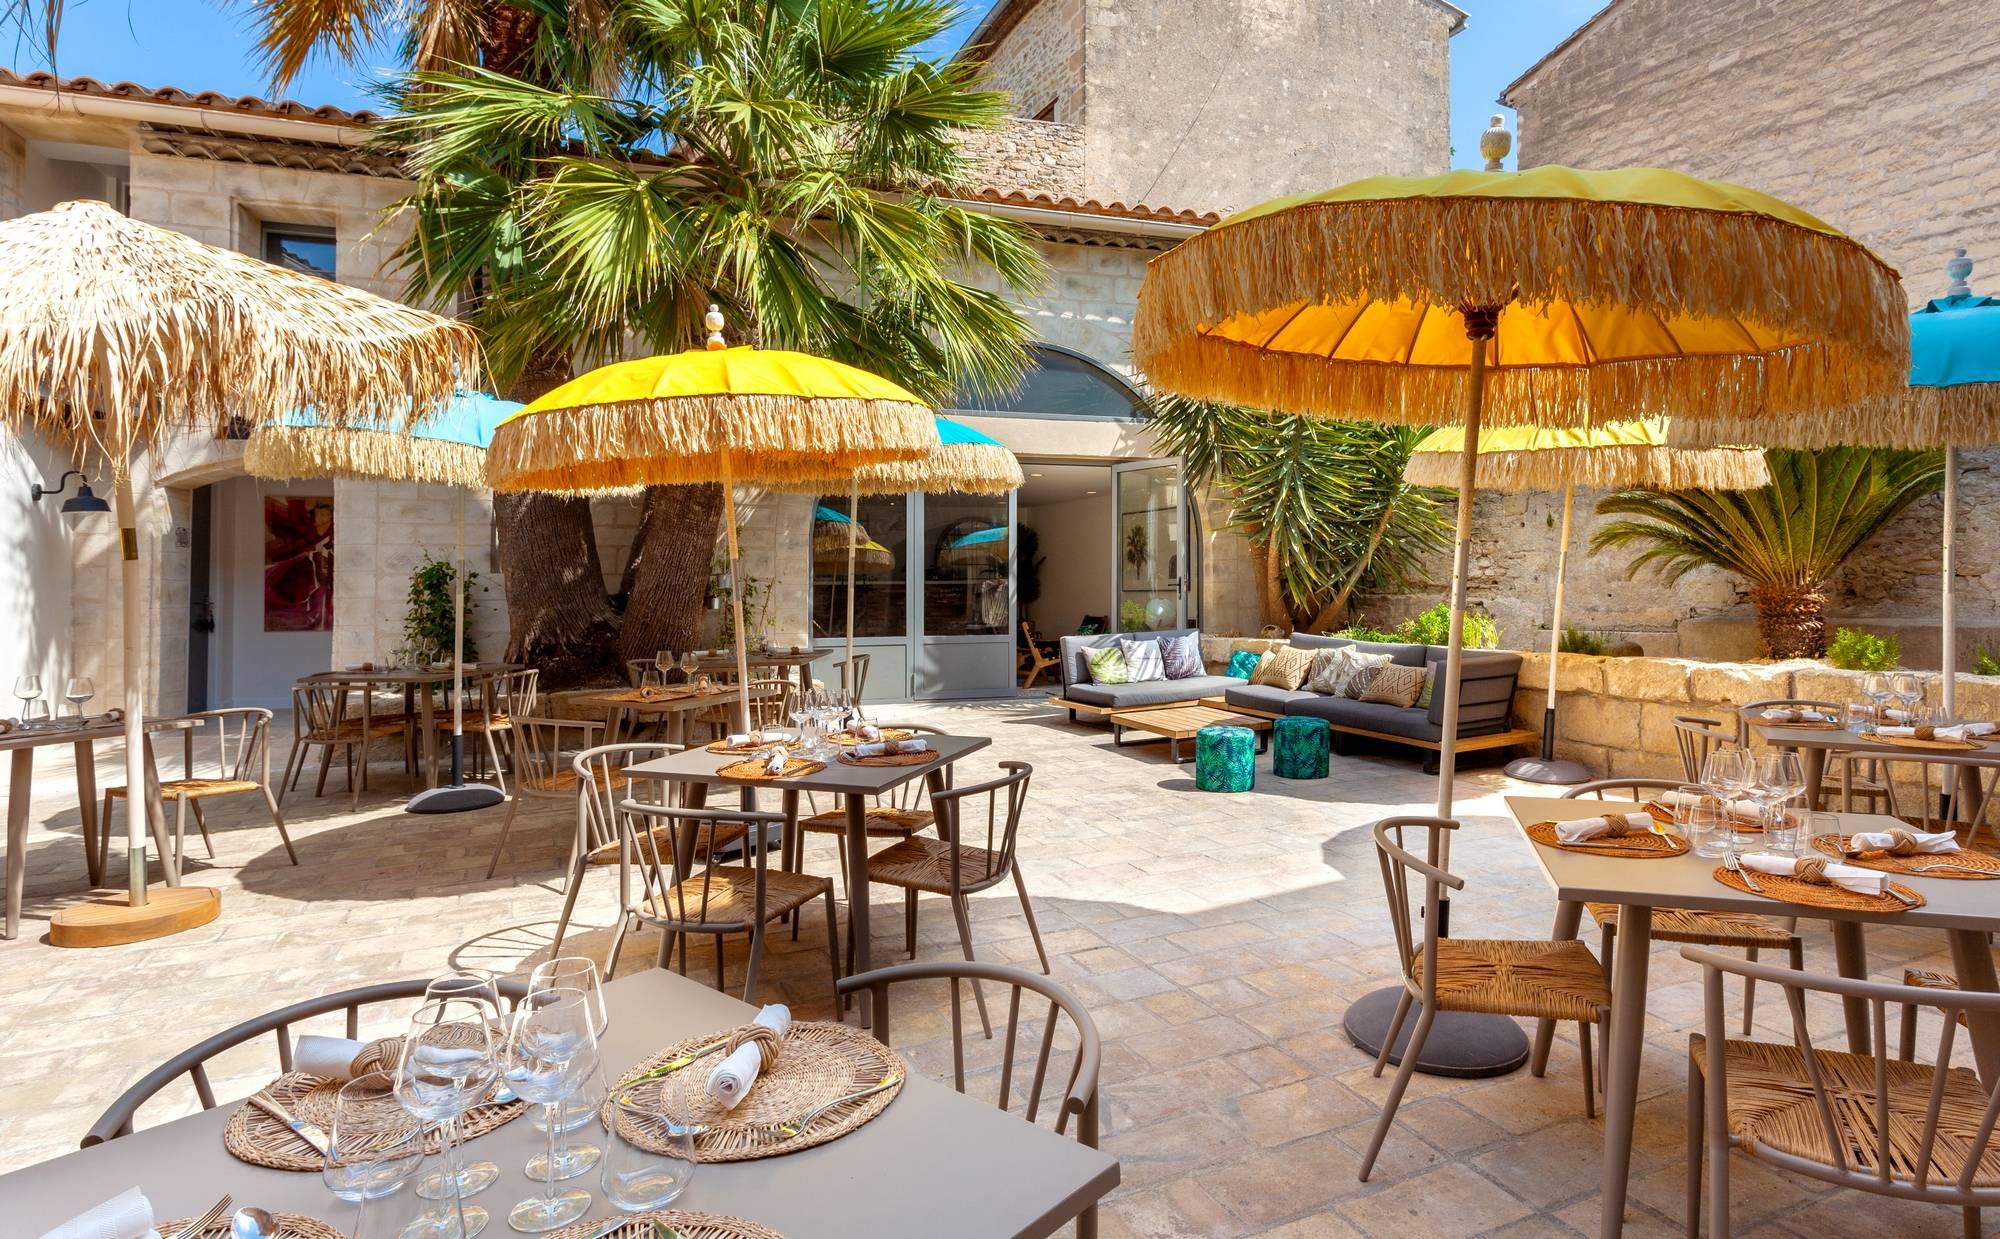 Hôtel-restaurant 4 étoiles à vendre entre Nîmes et Montpellier